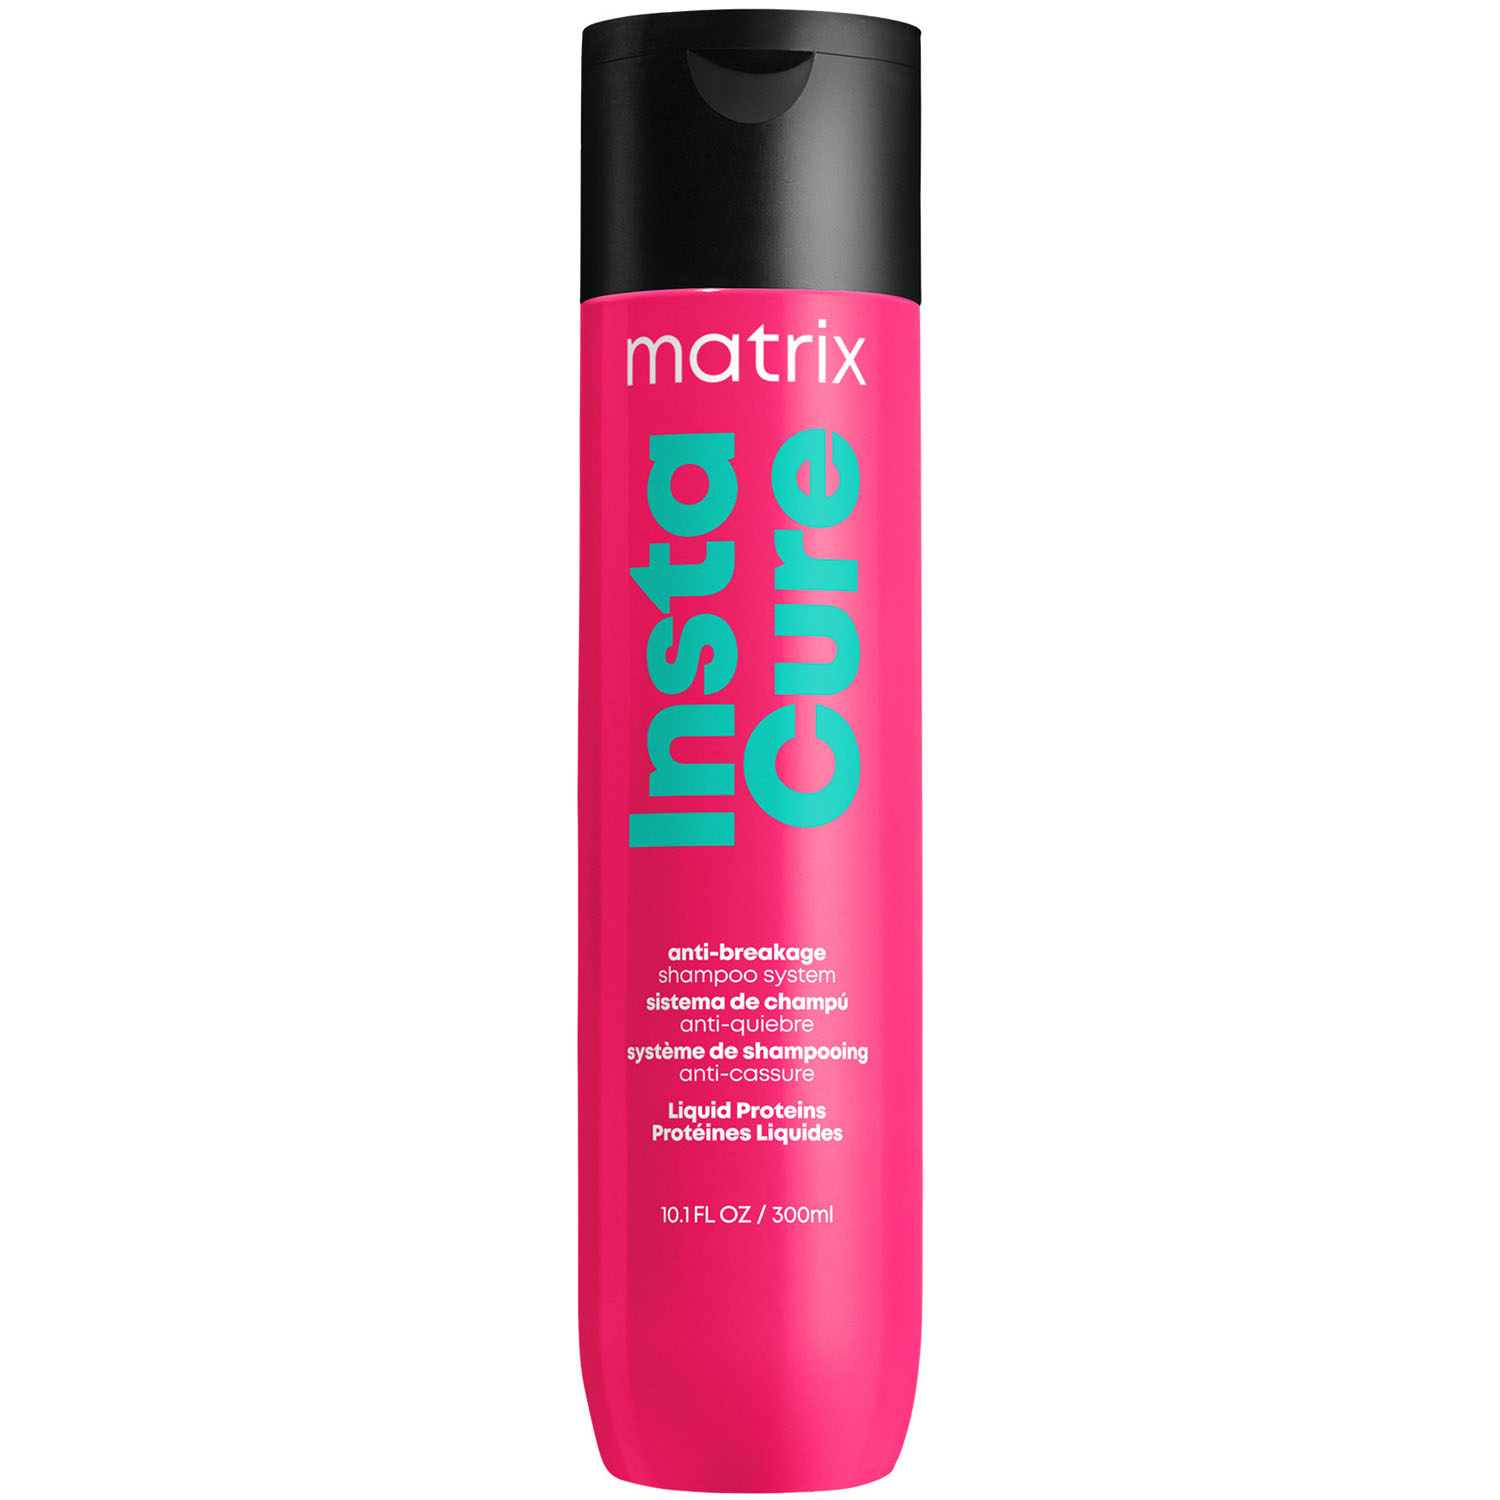 Matrix Профессиональный шампунь для восстановления волос с жидким протеином, 300 мл (Matrix, Total Results) matrix профессиональный шампунь instacure для восстановления волос с жидким протеином 1000 мл х 2 шт matrix total results